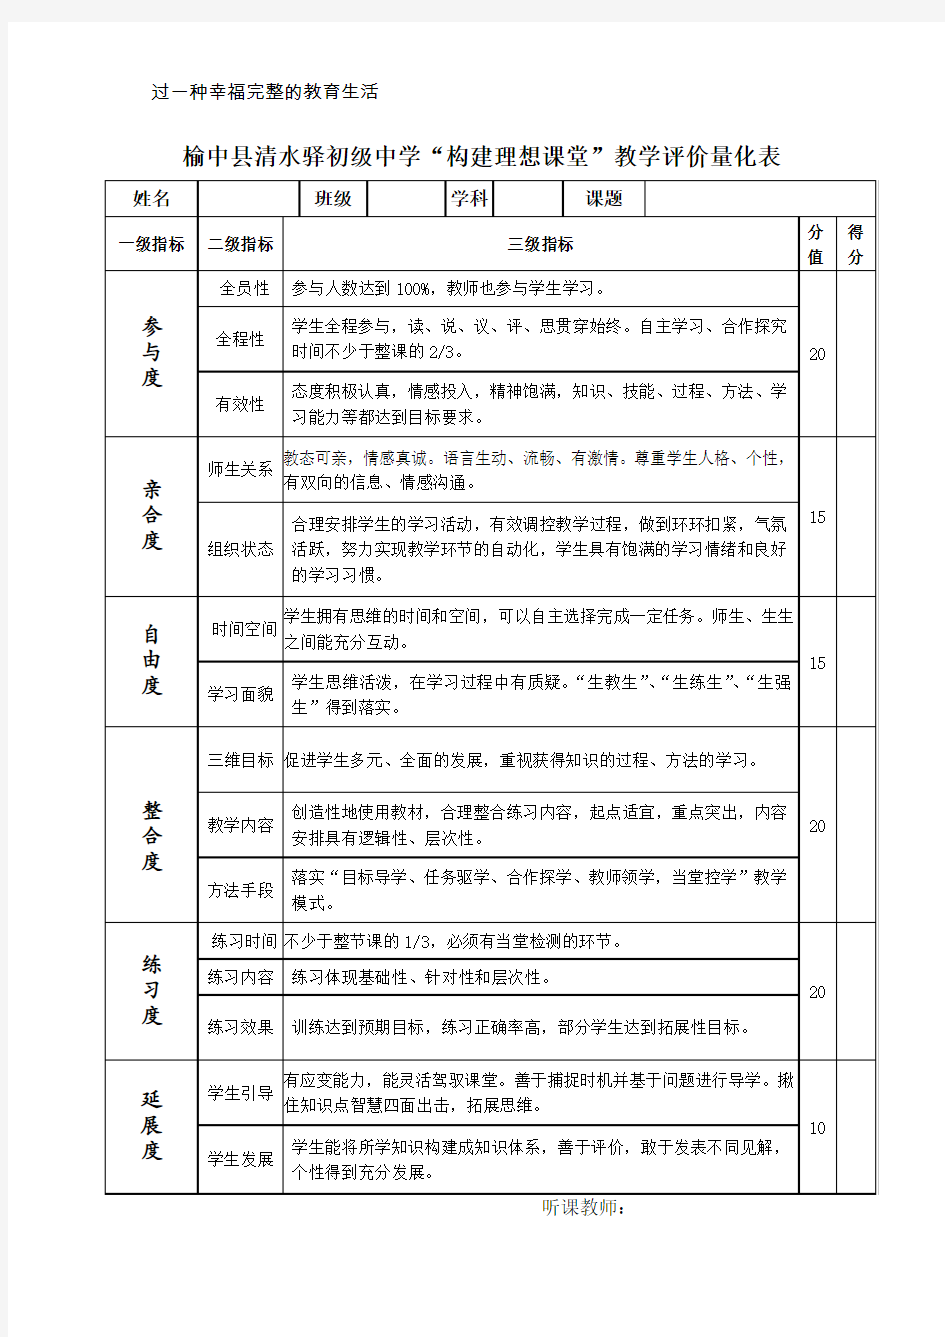 榆中县清水驿中学构建理想课堂教学评价量表